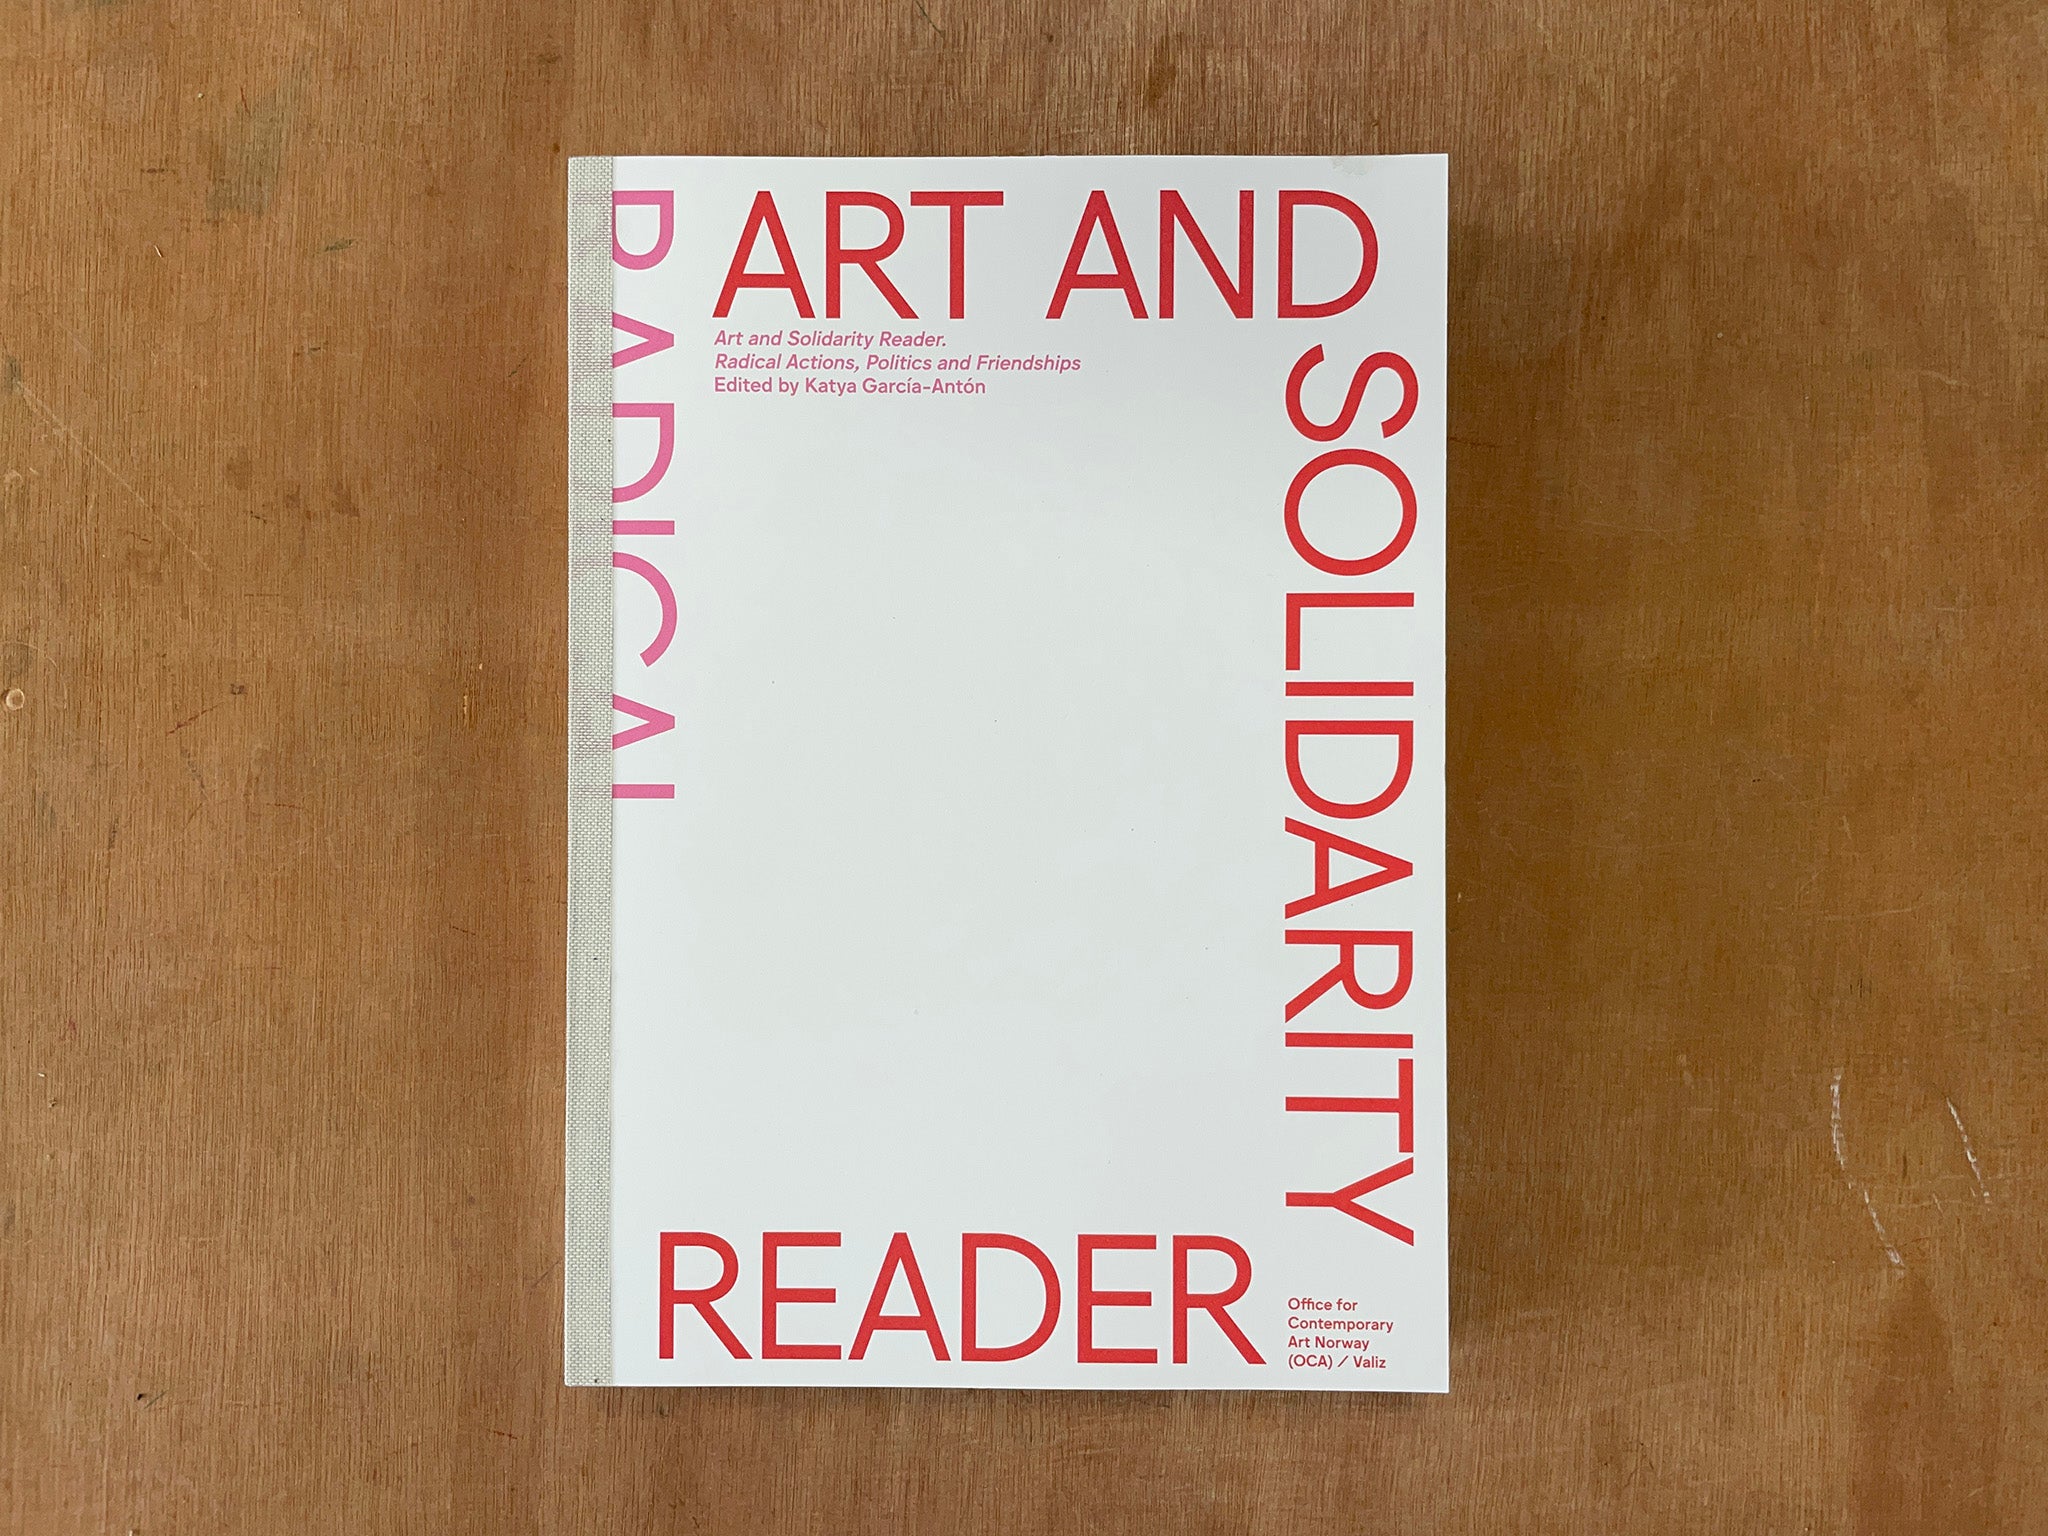 ART AND SOLIDARITY READER: RADICAL ACTIONS, POLITICS AND FRIENDSHIPS Edited by Katya García-Antón